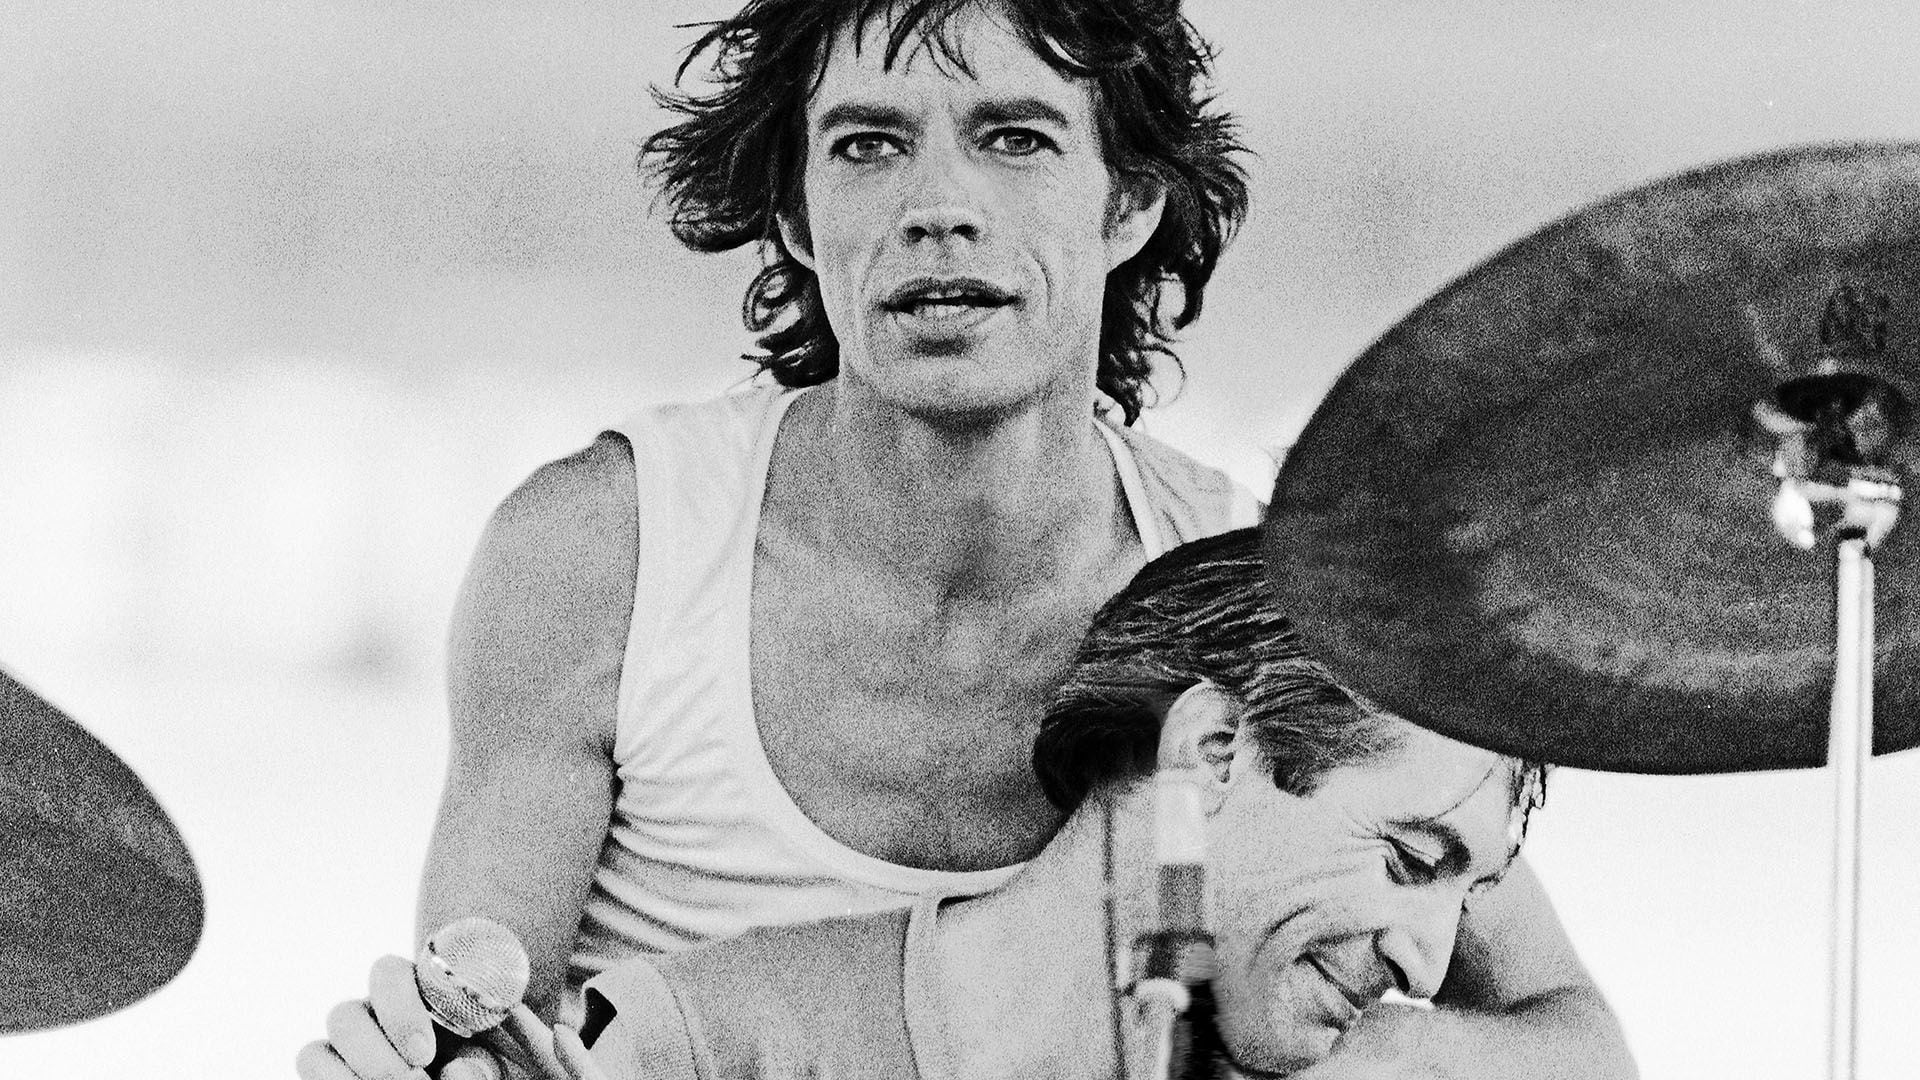 Mick Jagger y Charlie Watts en el documental Let's Spend the Night Together de 1981. El cantante conoció el lado menos amable del baterista cuando recibió una trompada de Watts que lo noqueó (Photo by Aaron Rapoport/Corbis via Getty Images)